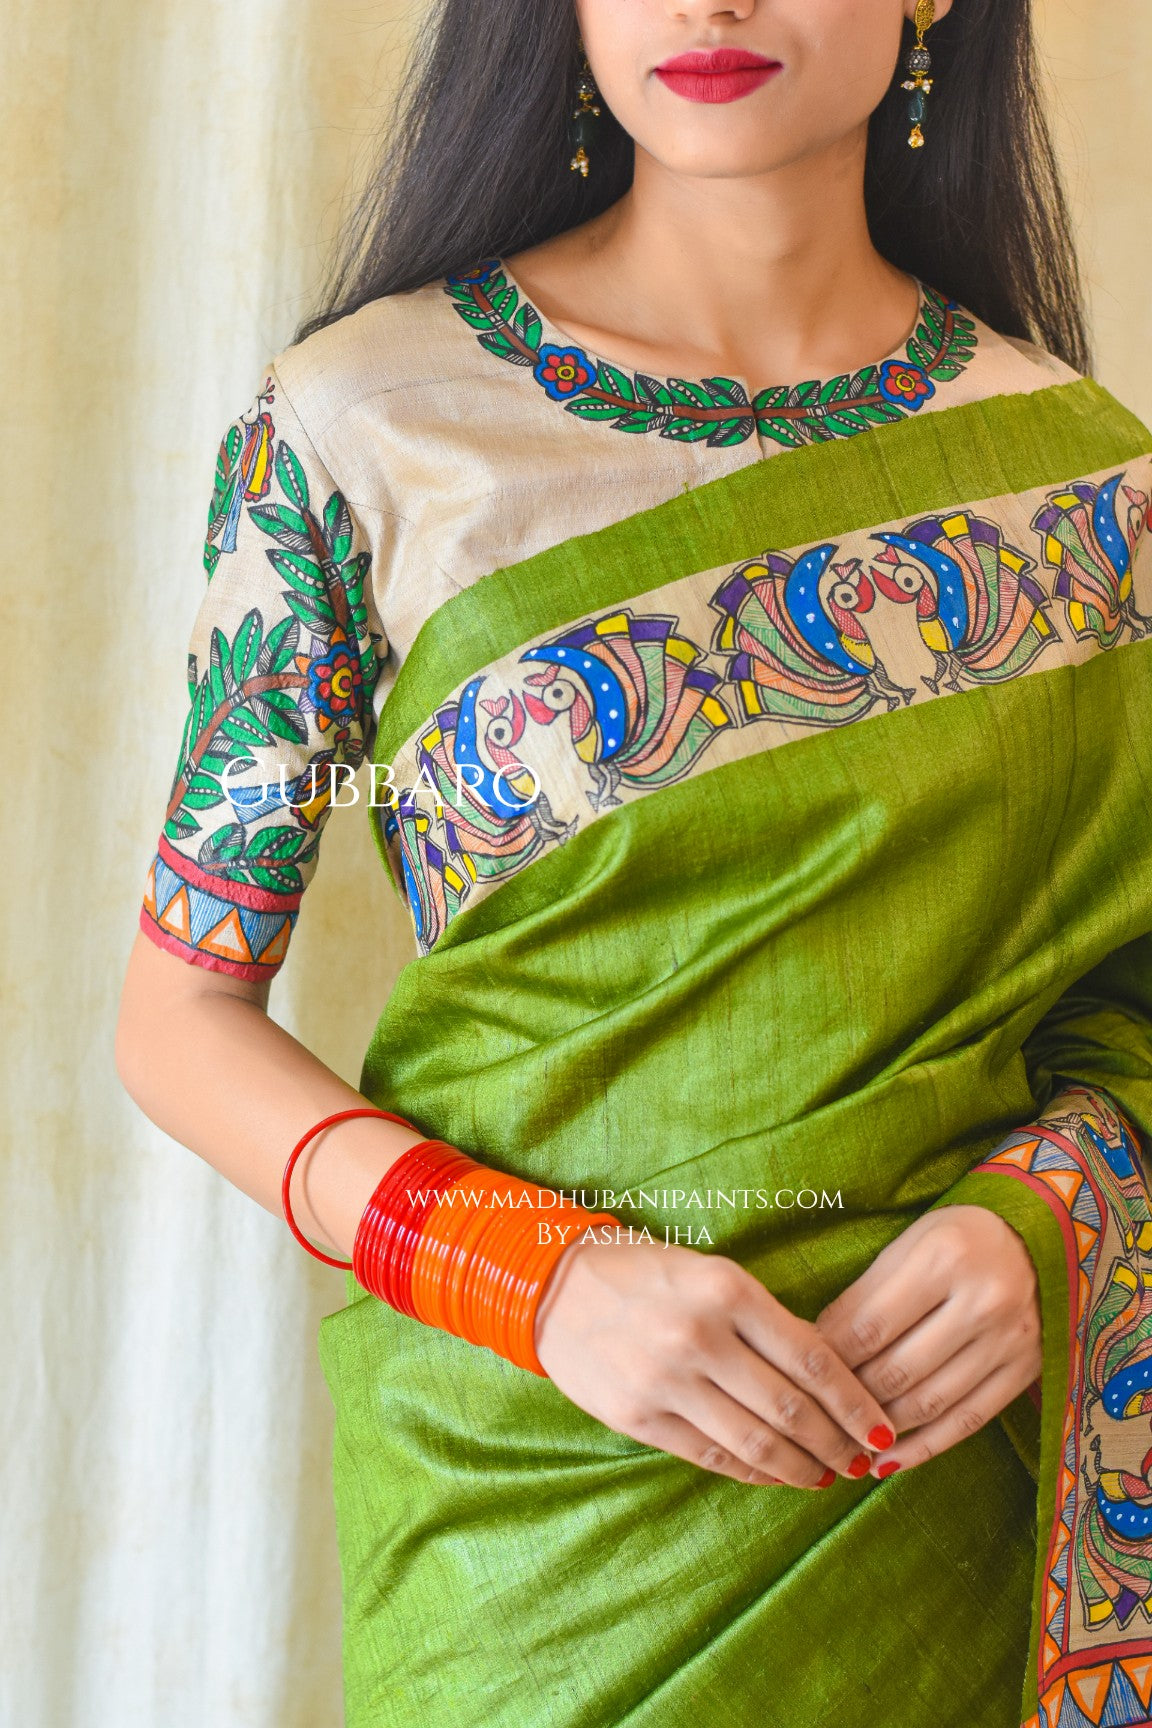 RADHA SANG KRISHNA Handpainted Madhubani Tussar Silk Saree Blouse